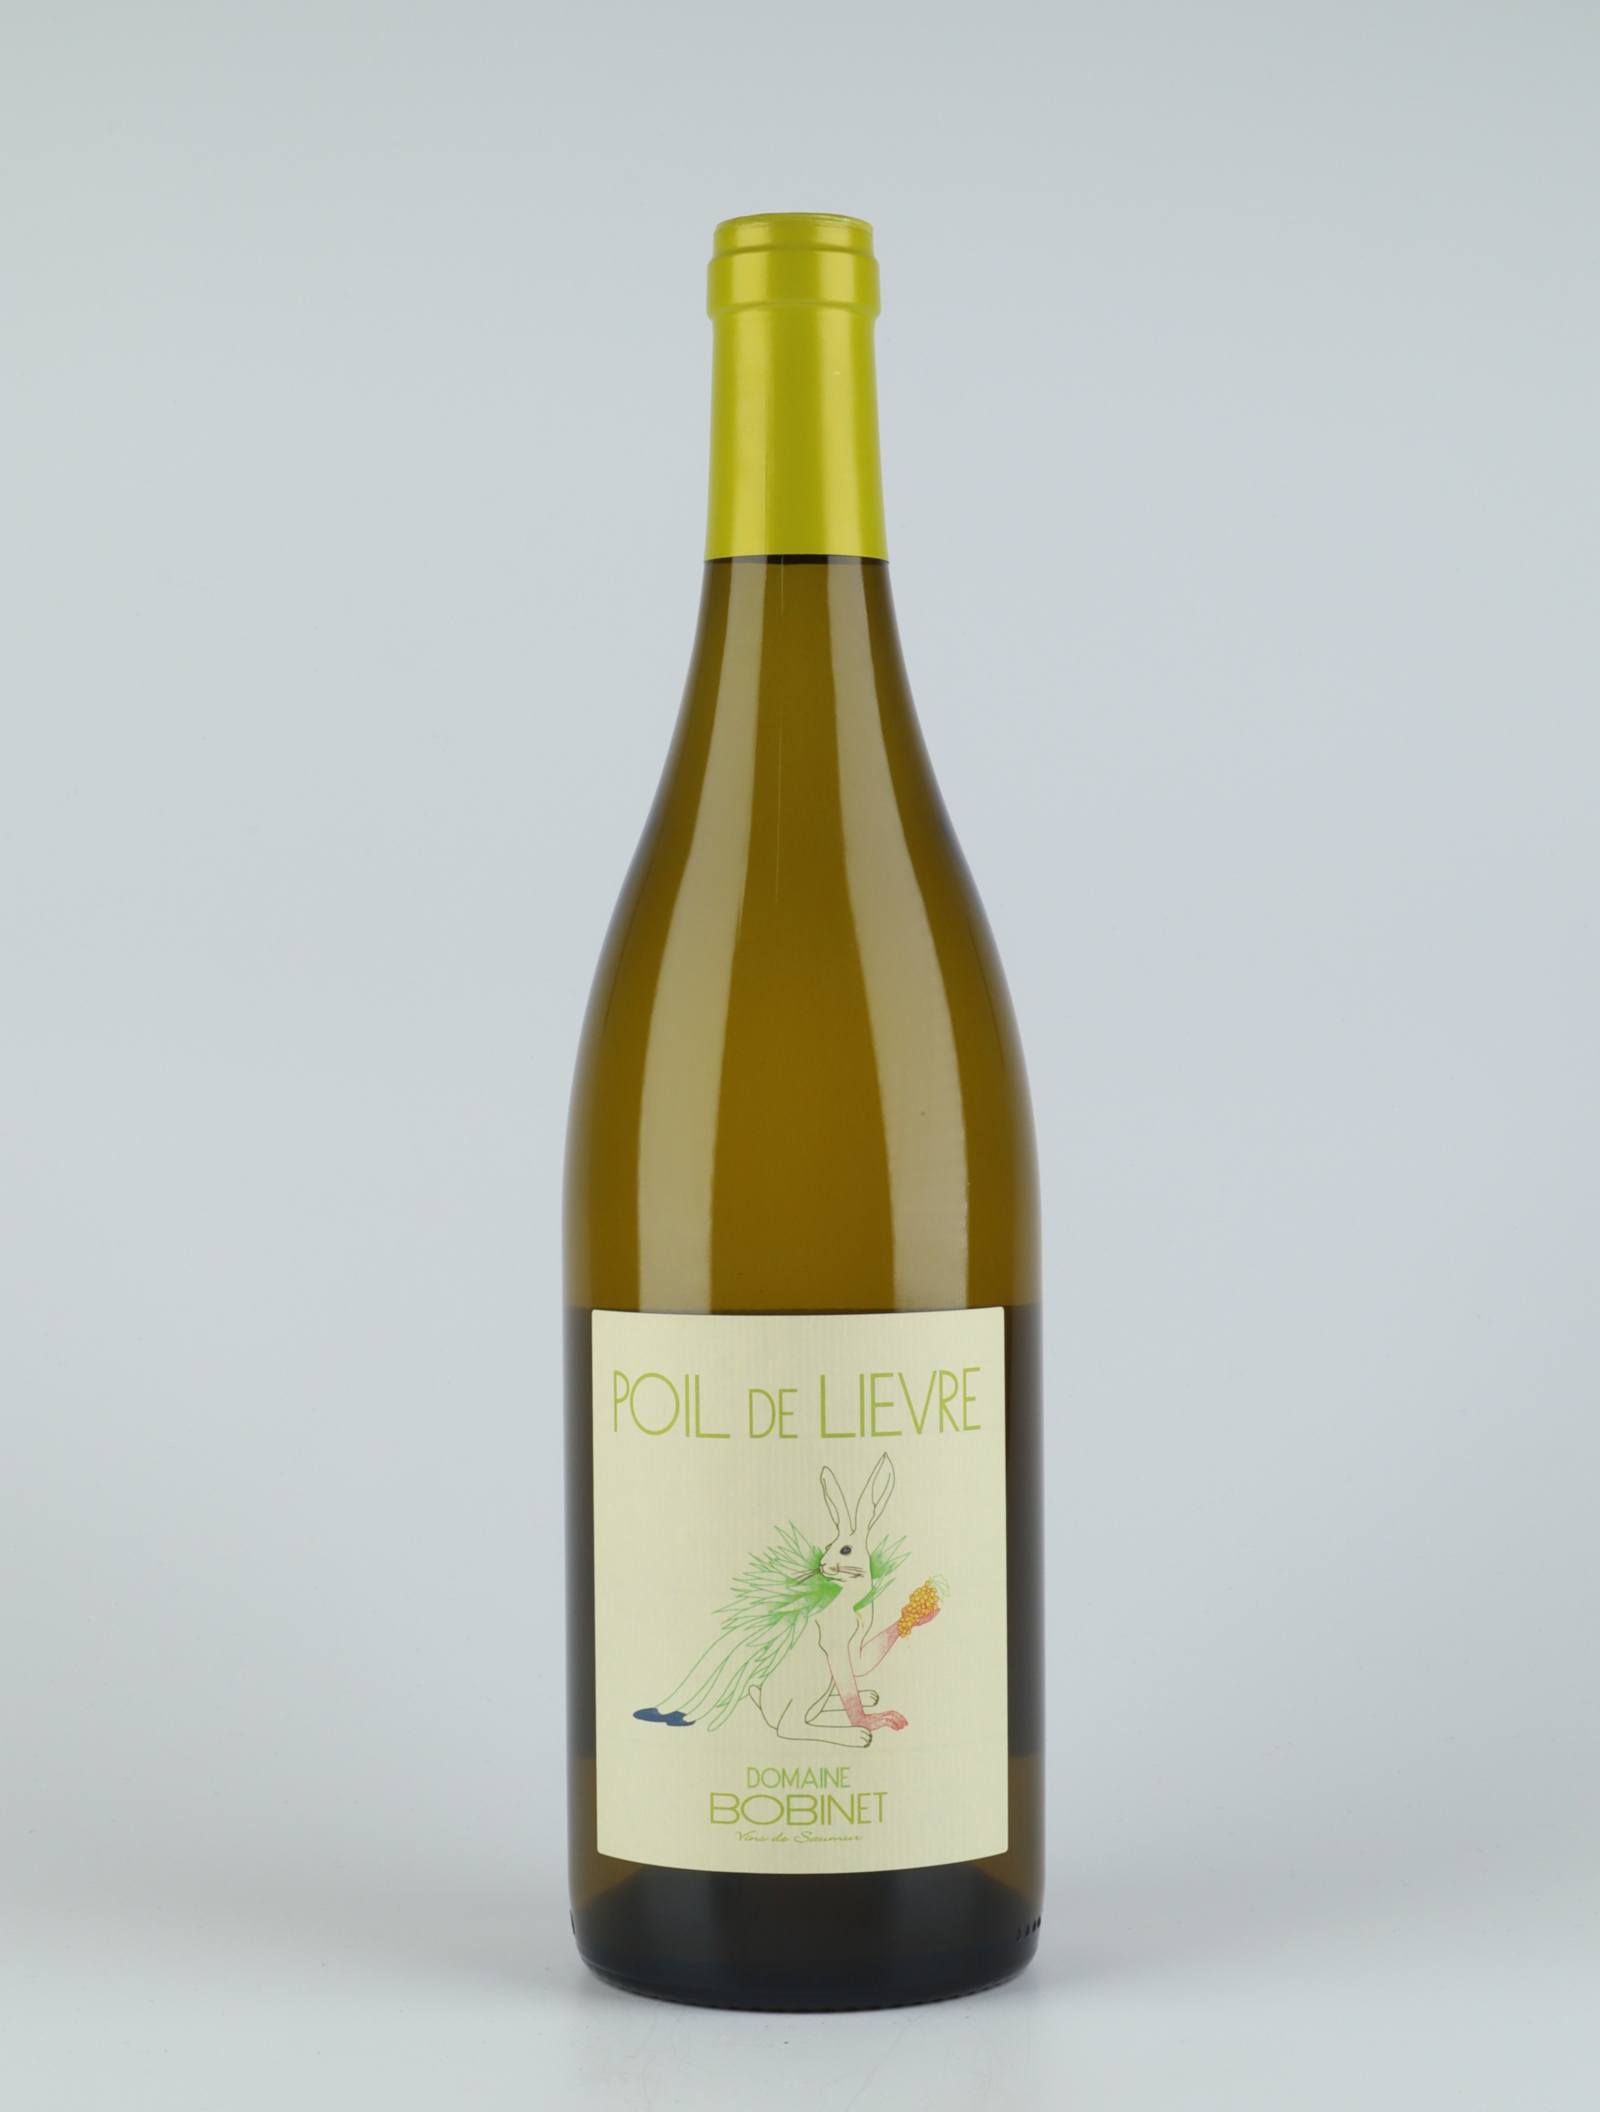 En flaske 2019 Saumur Blanc - Poil de Lièvre Hvidvin fra Domaine Bobinet, Loire i Frankrig